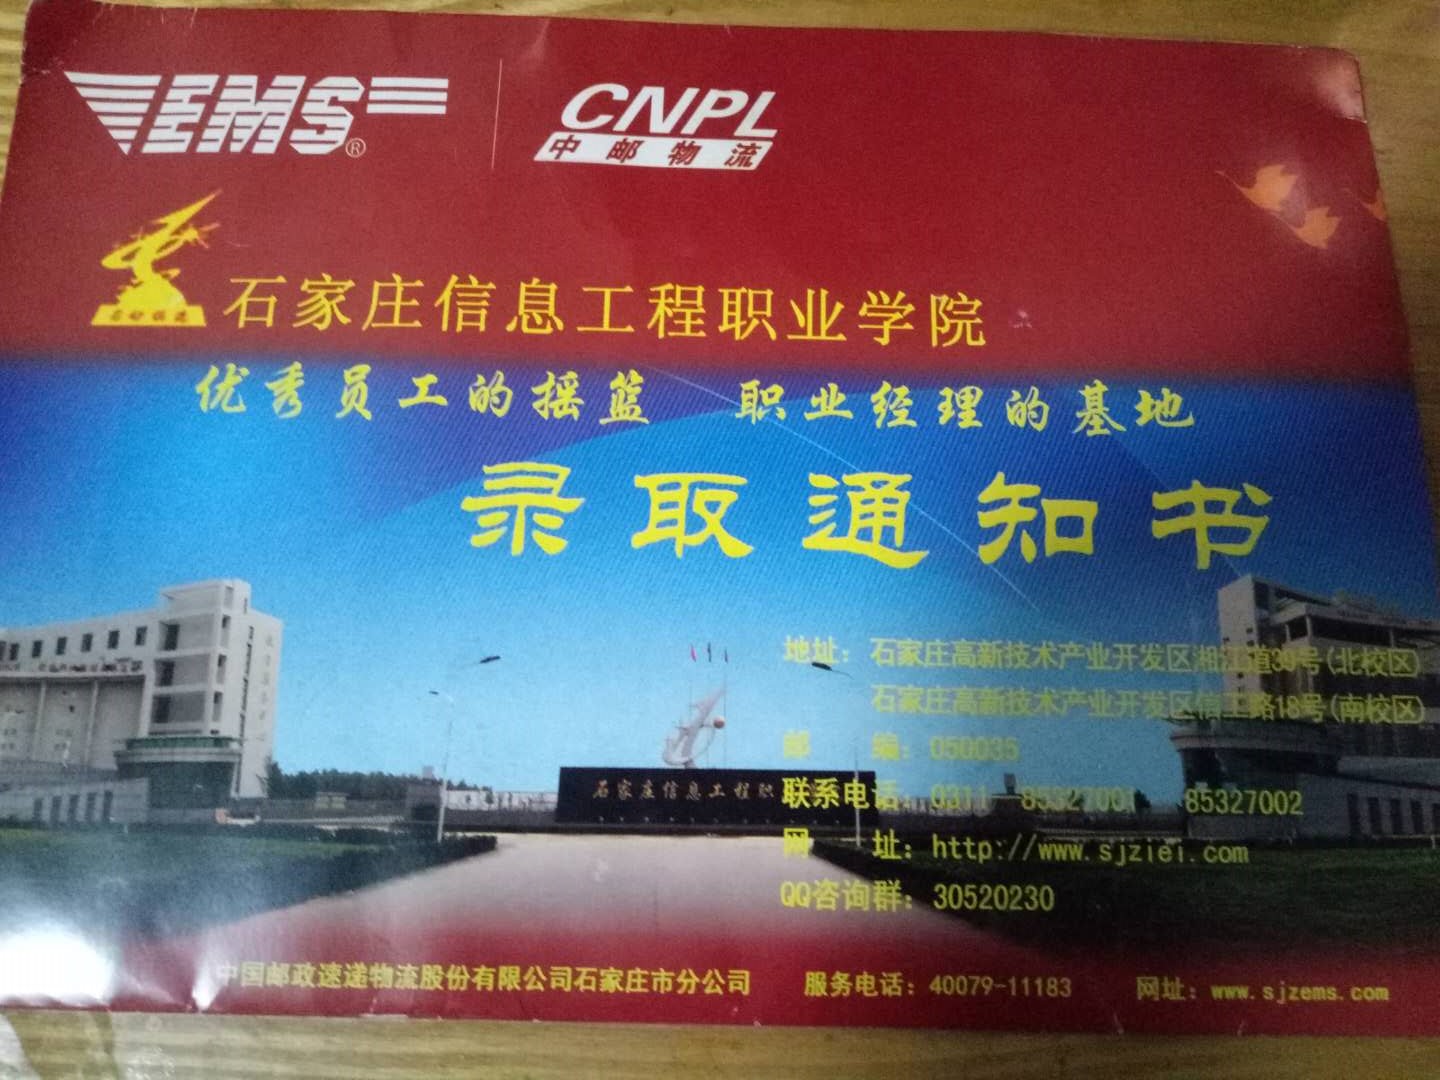 石家庄信息工程职业学院2019年高职单招录取通知书